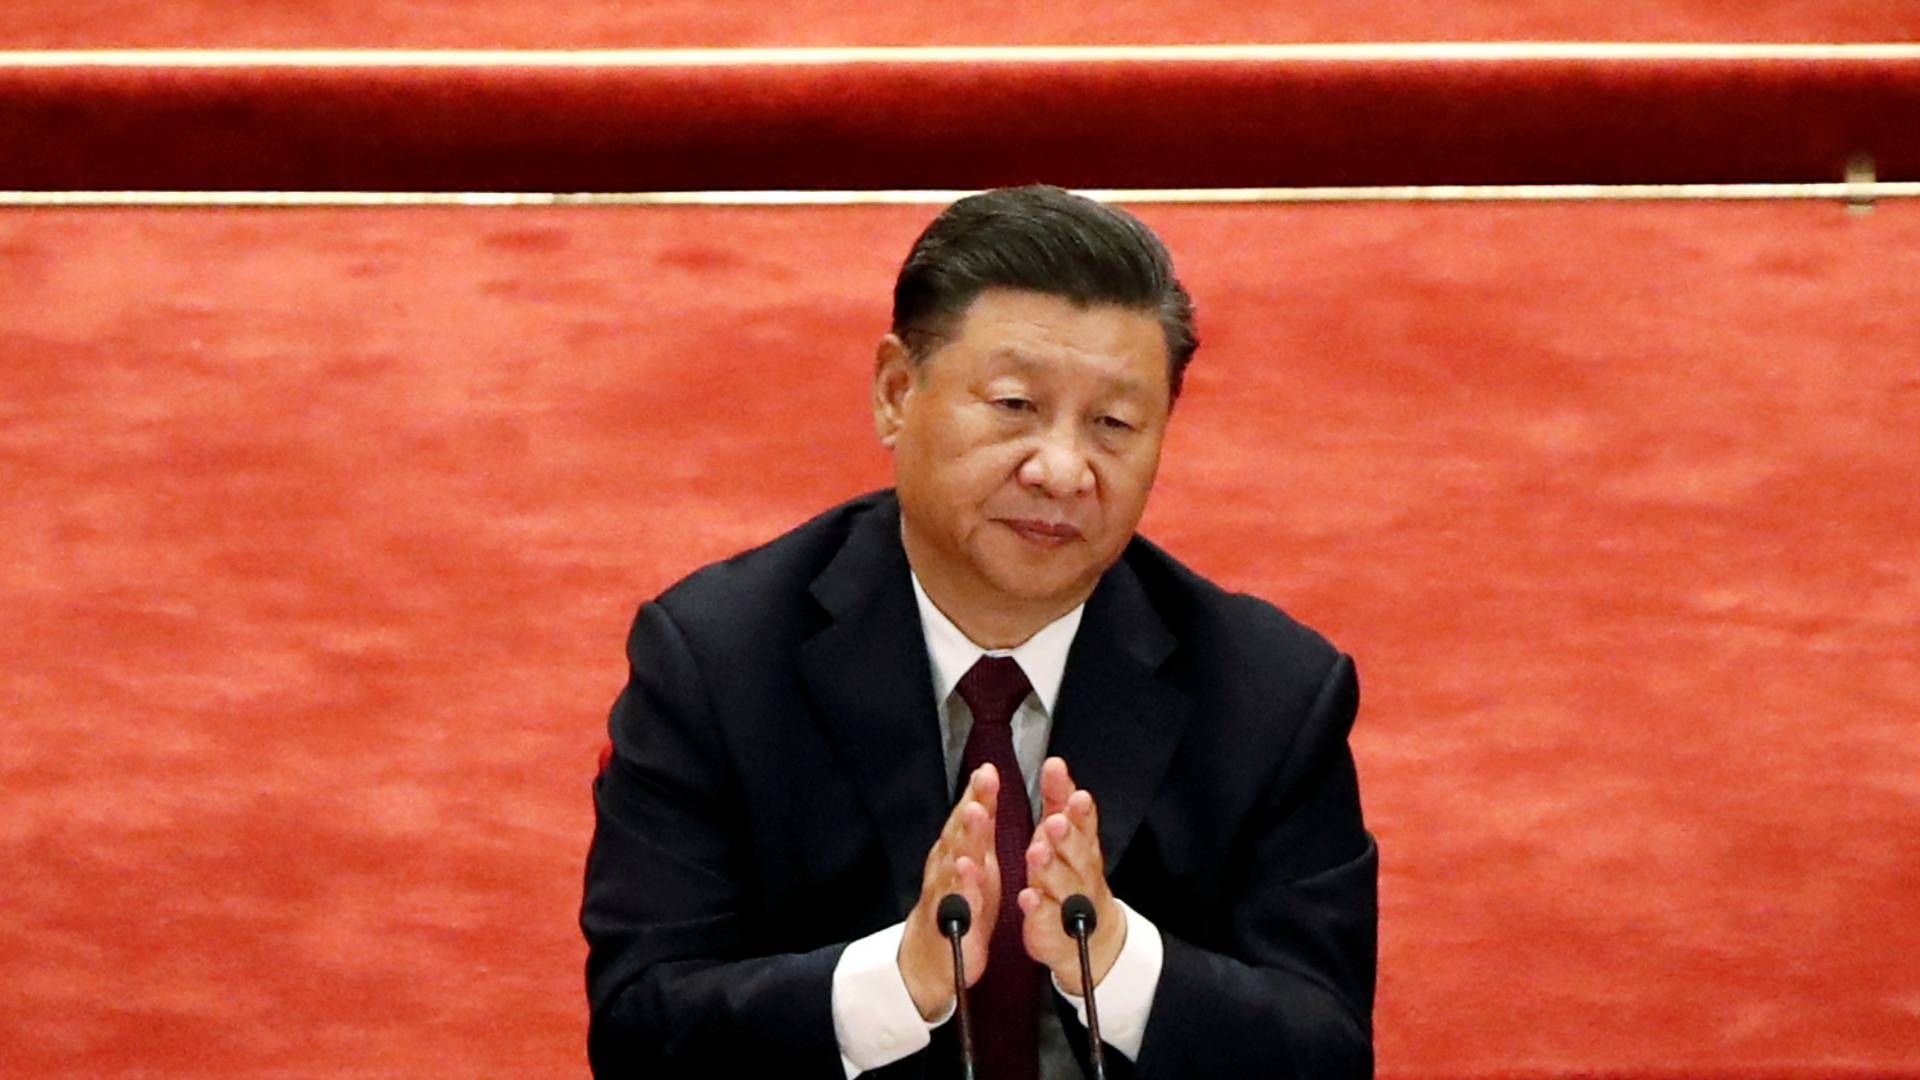 Xi Jinping har onsdag indledt et telefonmøde med EU-ledere om en længe ventet investeringsaftale, som skal åbne den kinesiske økonomi mere for europæiske virksomheder. | Foto: CARLOS GARCIA RAWLINS/REUTERS / X03739